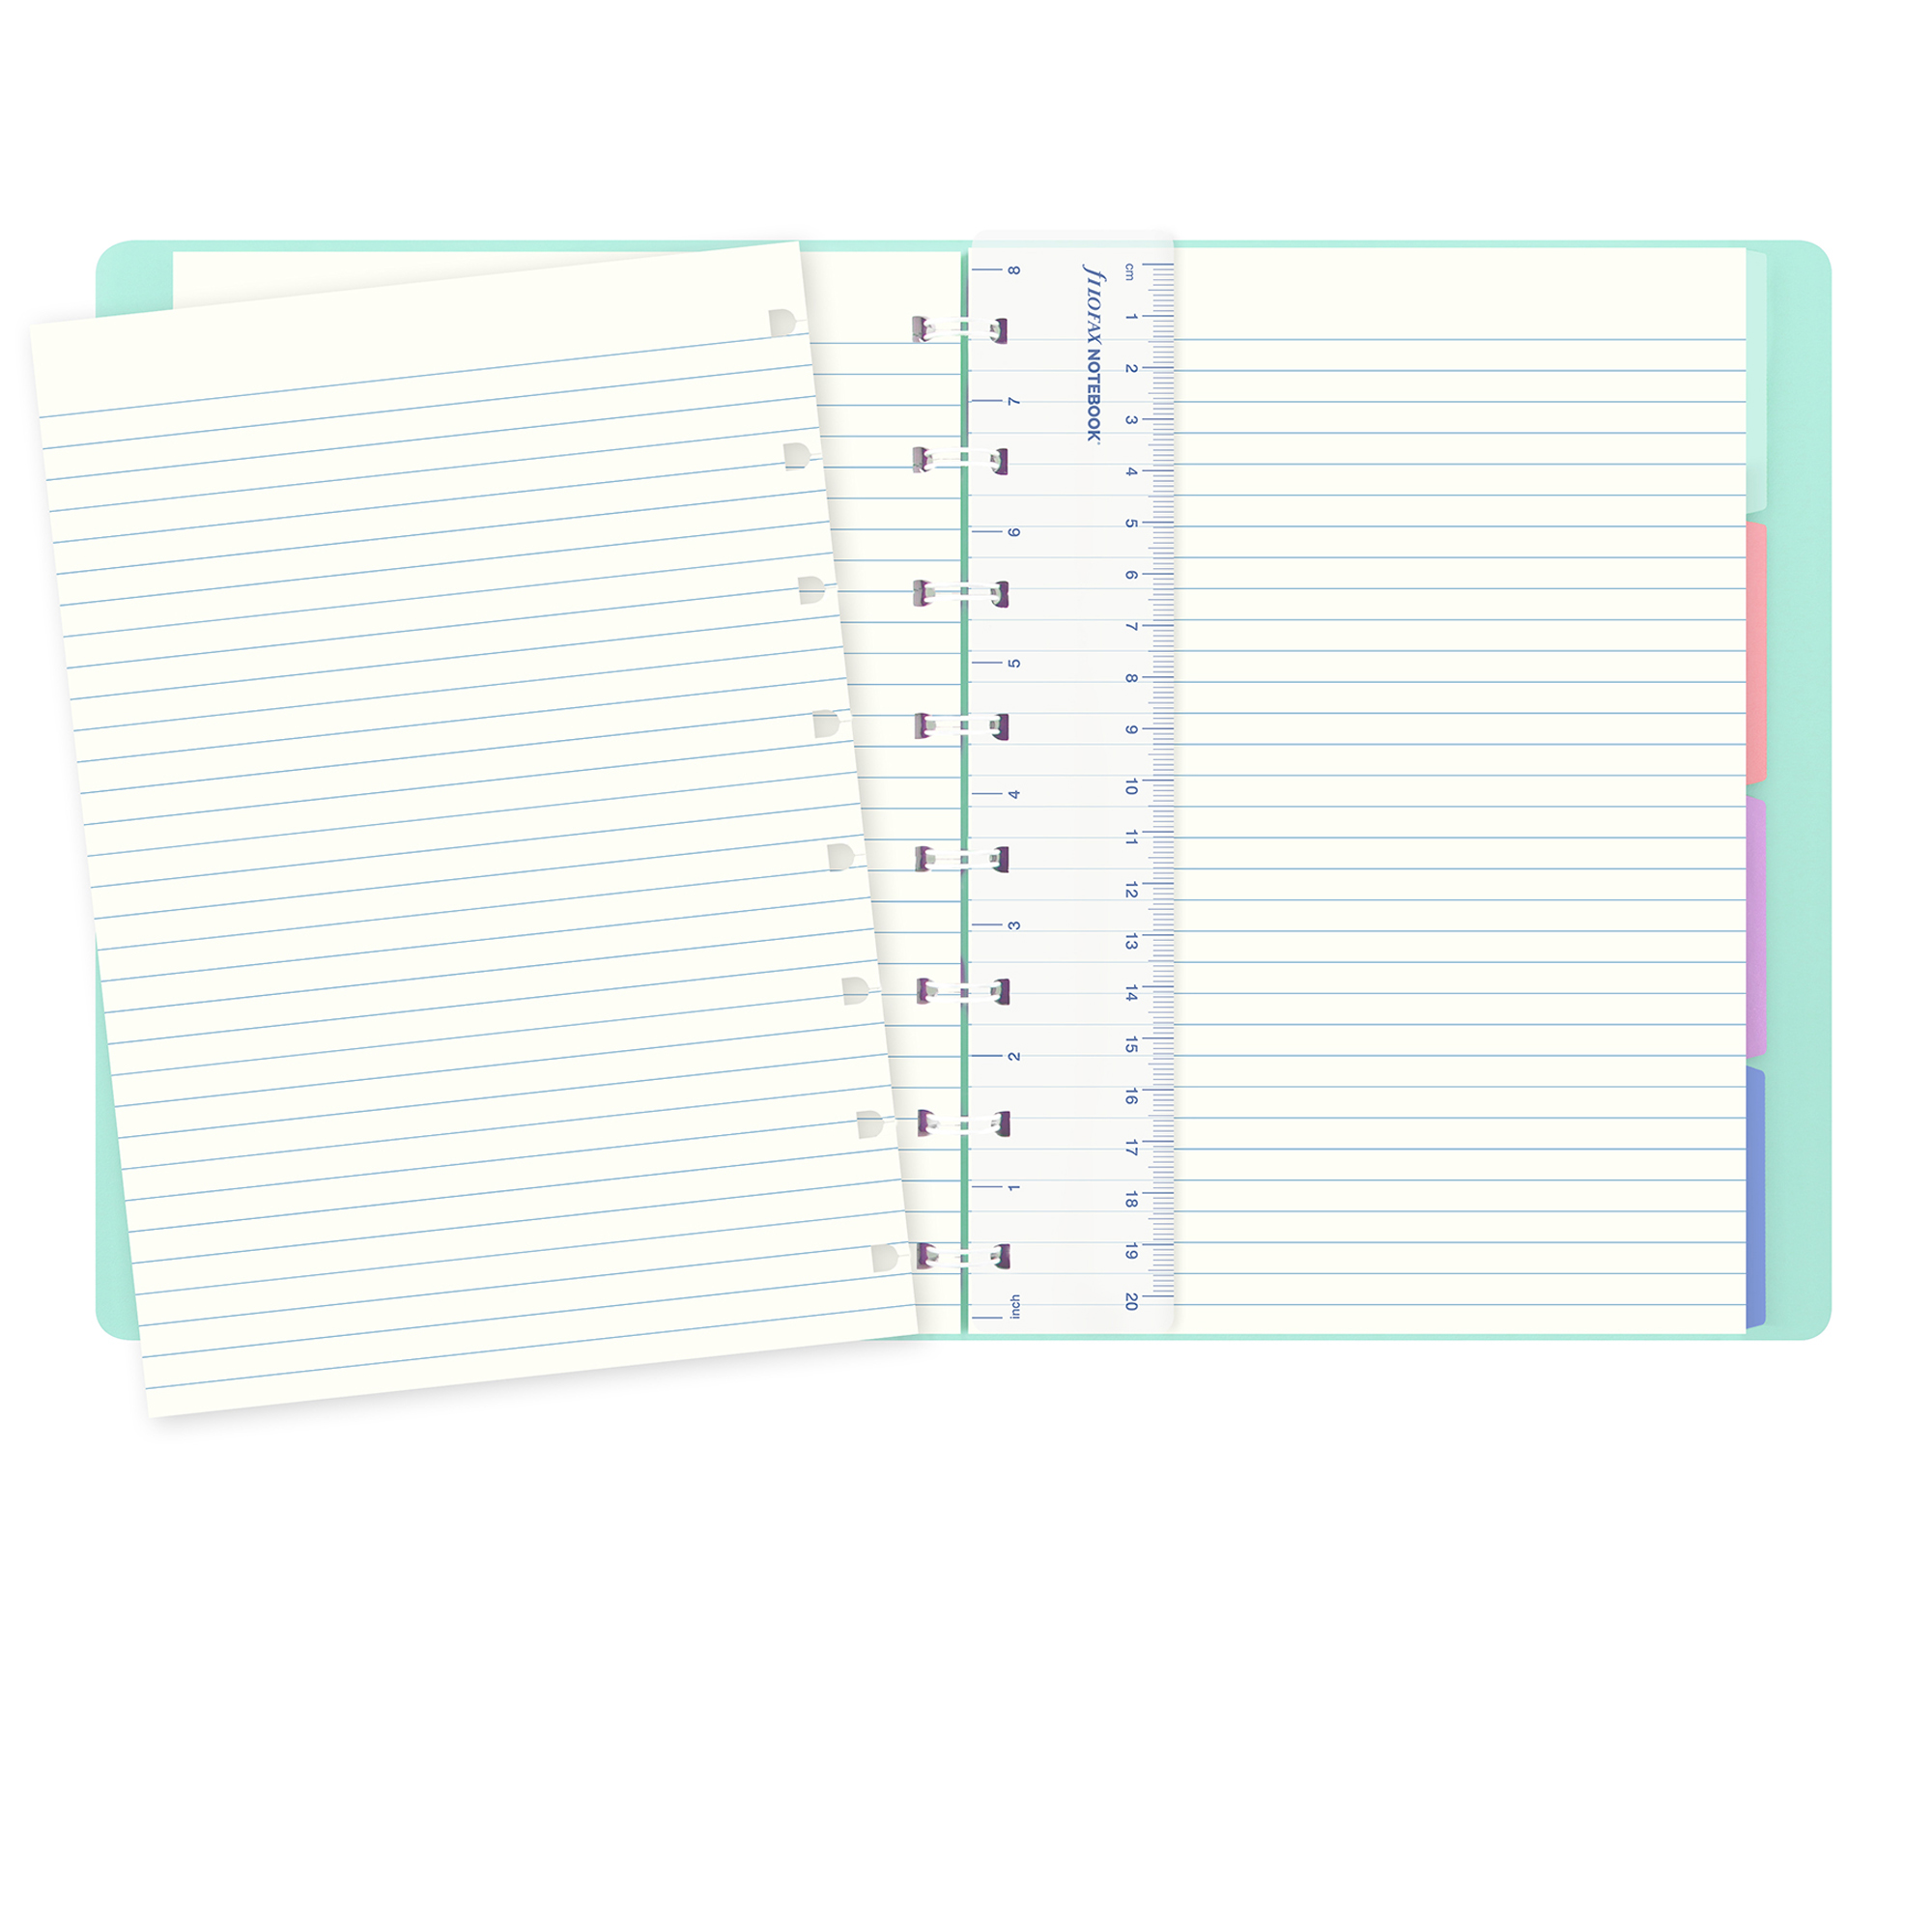 Notebook - con elastico - copertina similpelle - A5 - 56 pagine - a righe - verde pastello - Filofax